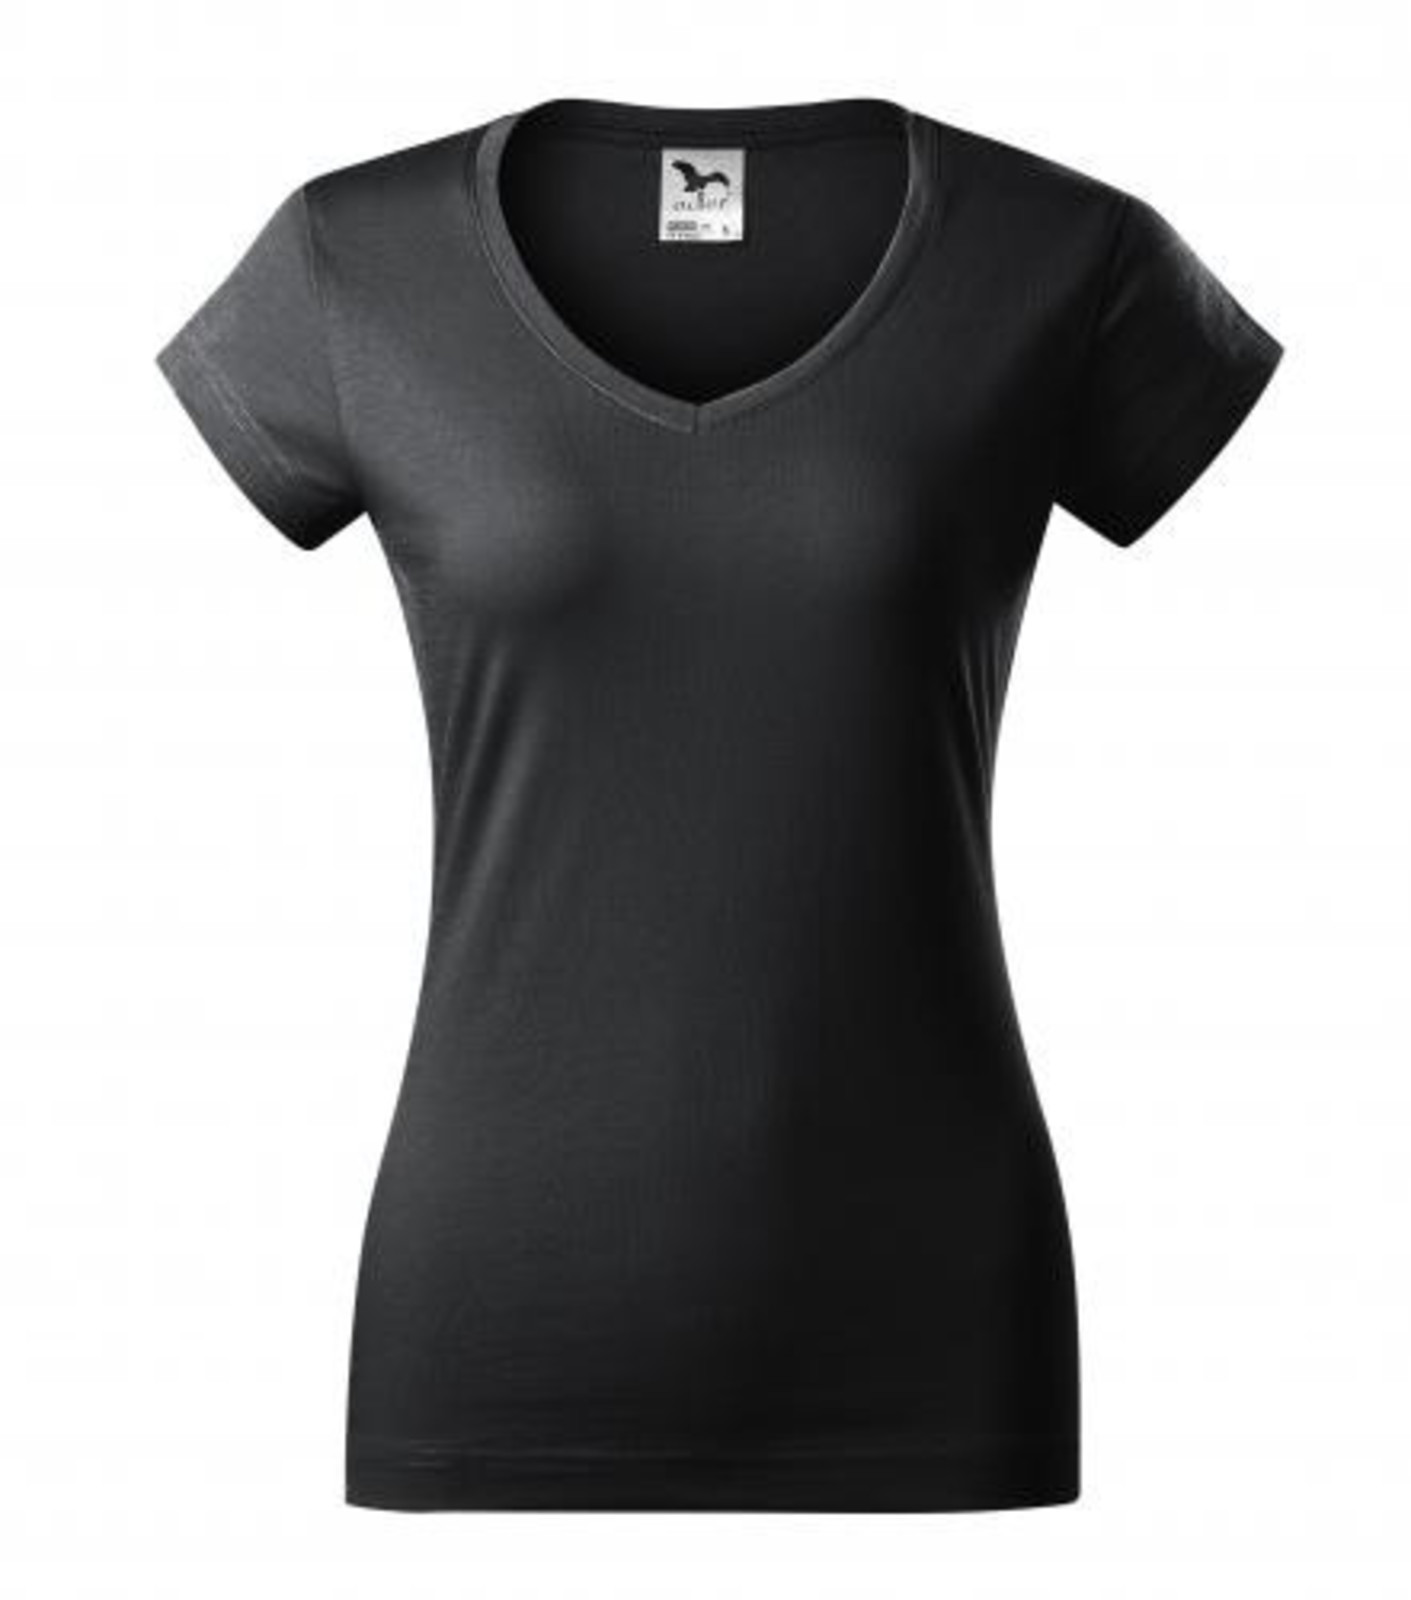 Dámske tričko s V výstrihom Adler Fit V-Neck 162 - veľkosť: S, farba: šedá ebony